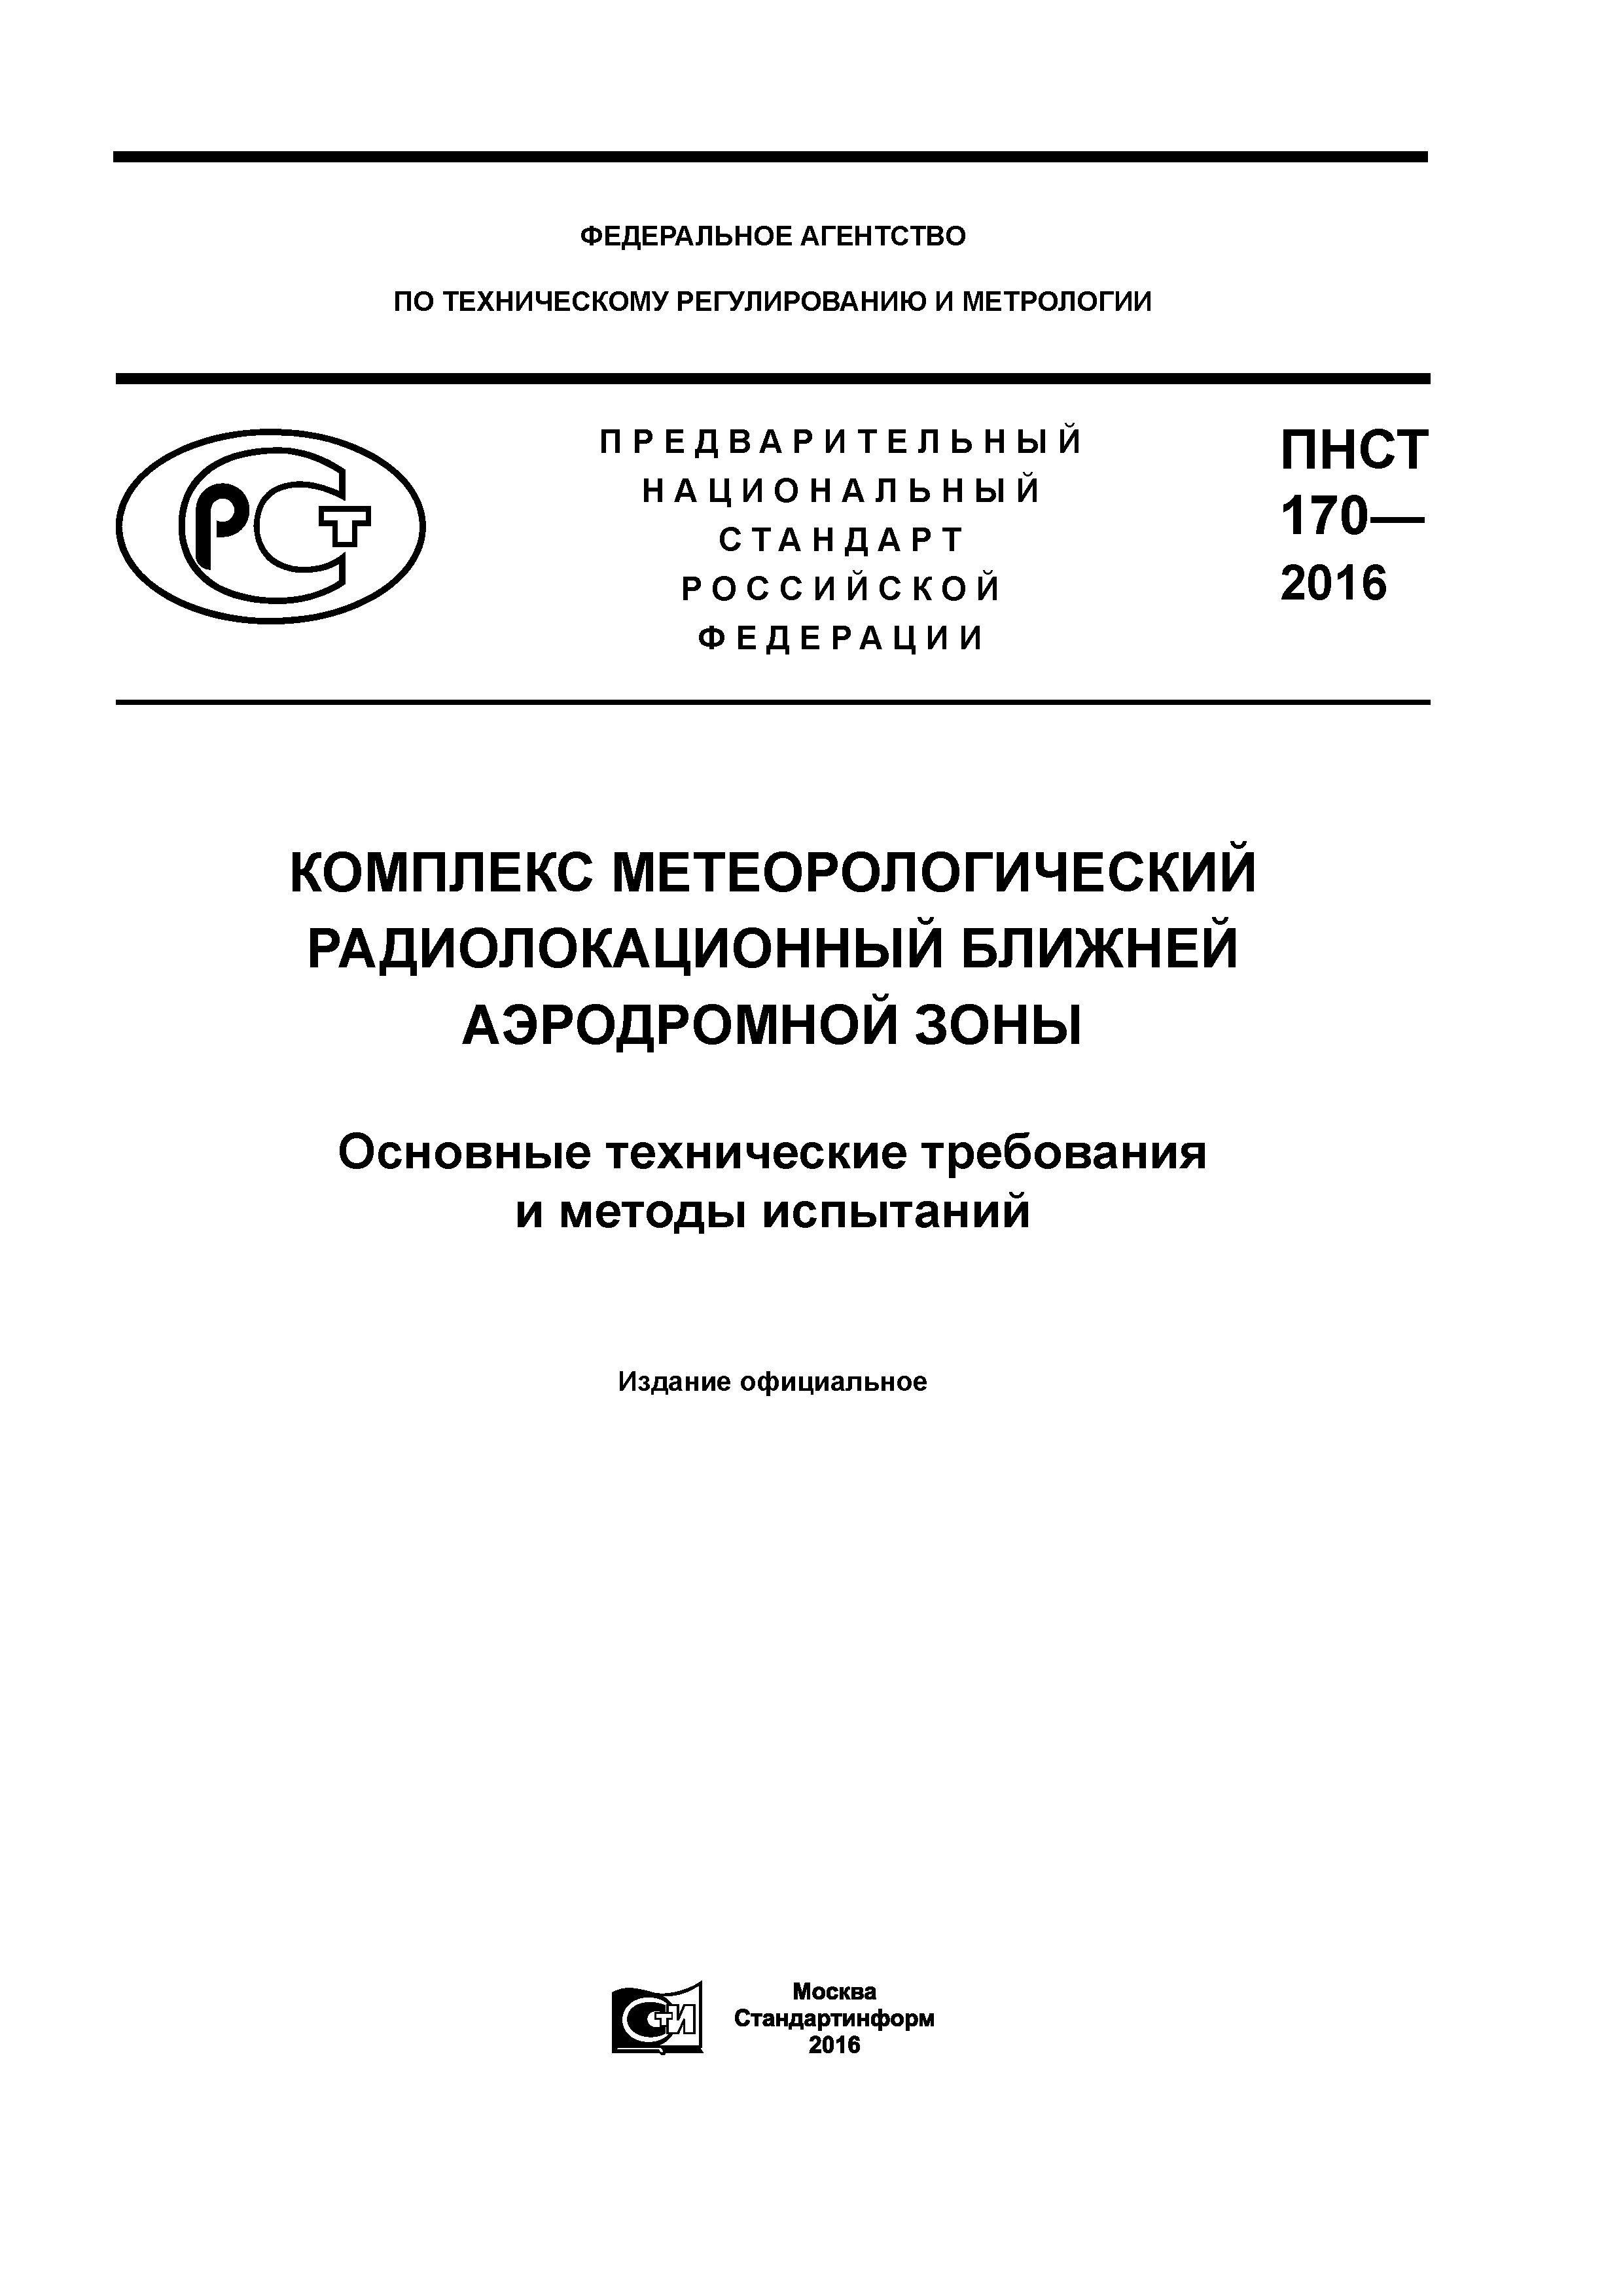 ПНСТ 170-2016